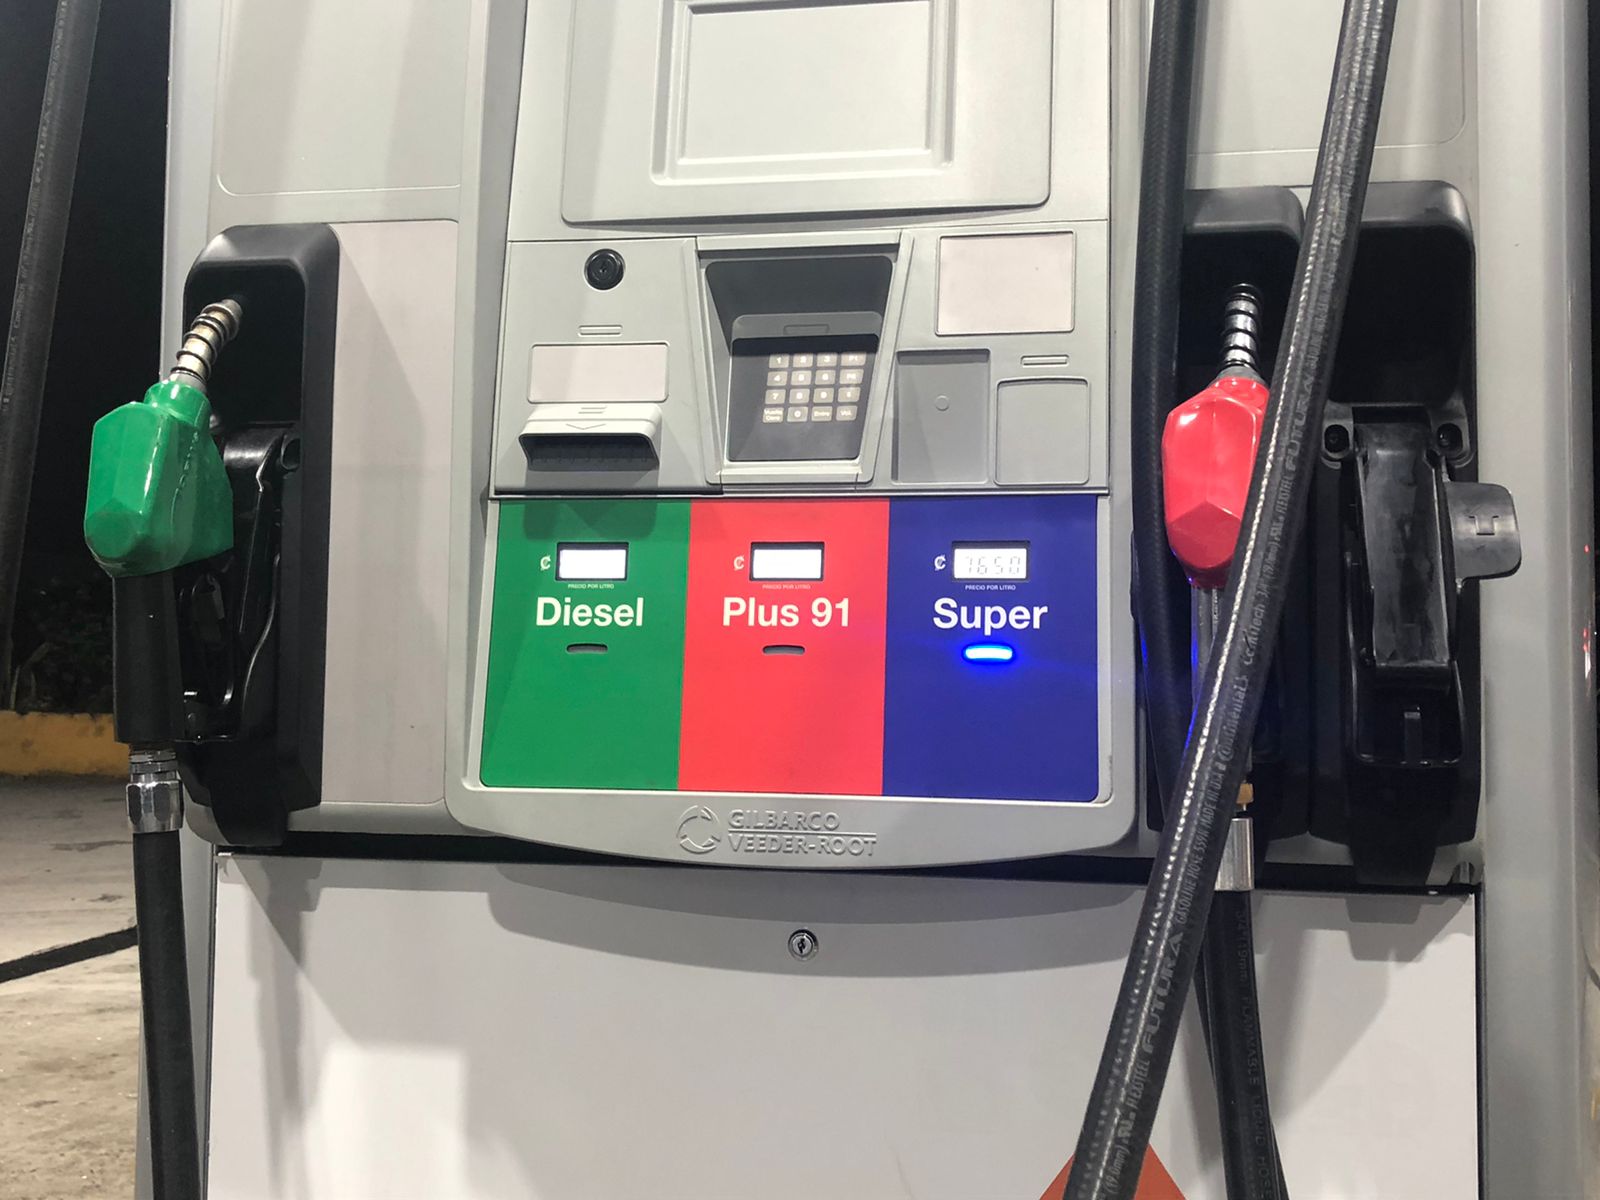 Combustibles llegarán a precios históricos este miércoles tras publicación de ajuste tarifario en La Gaceta